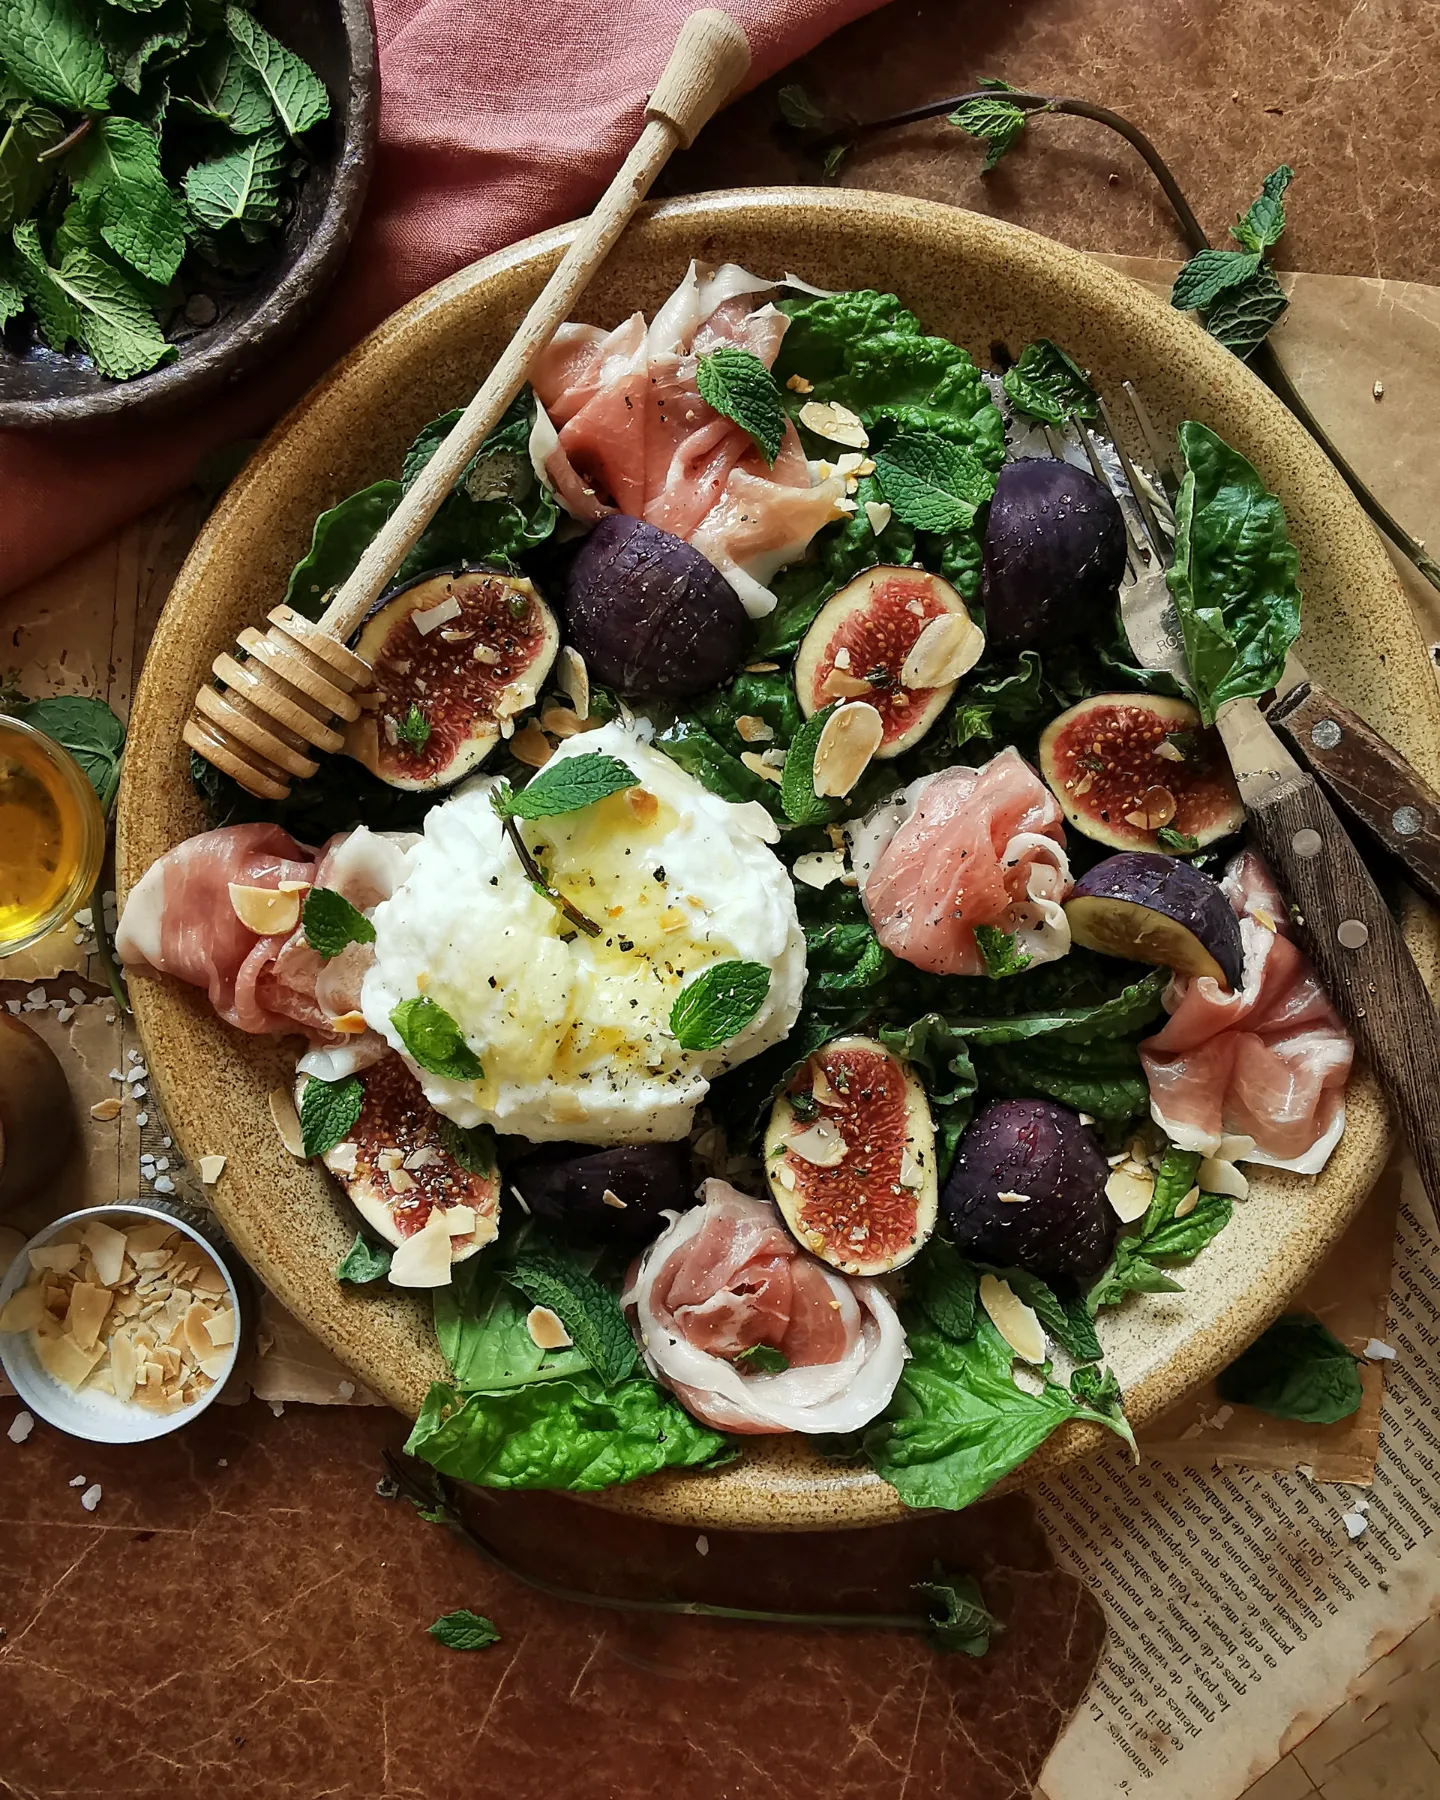 Burrata, figs, prosciutto, basil salad